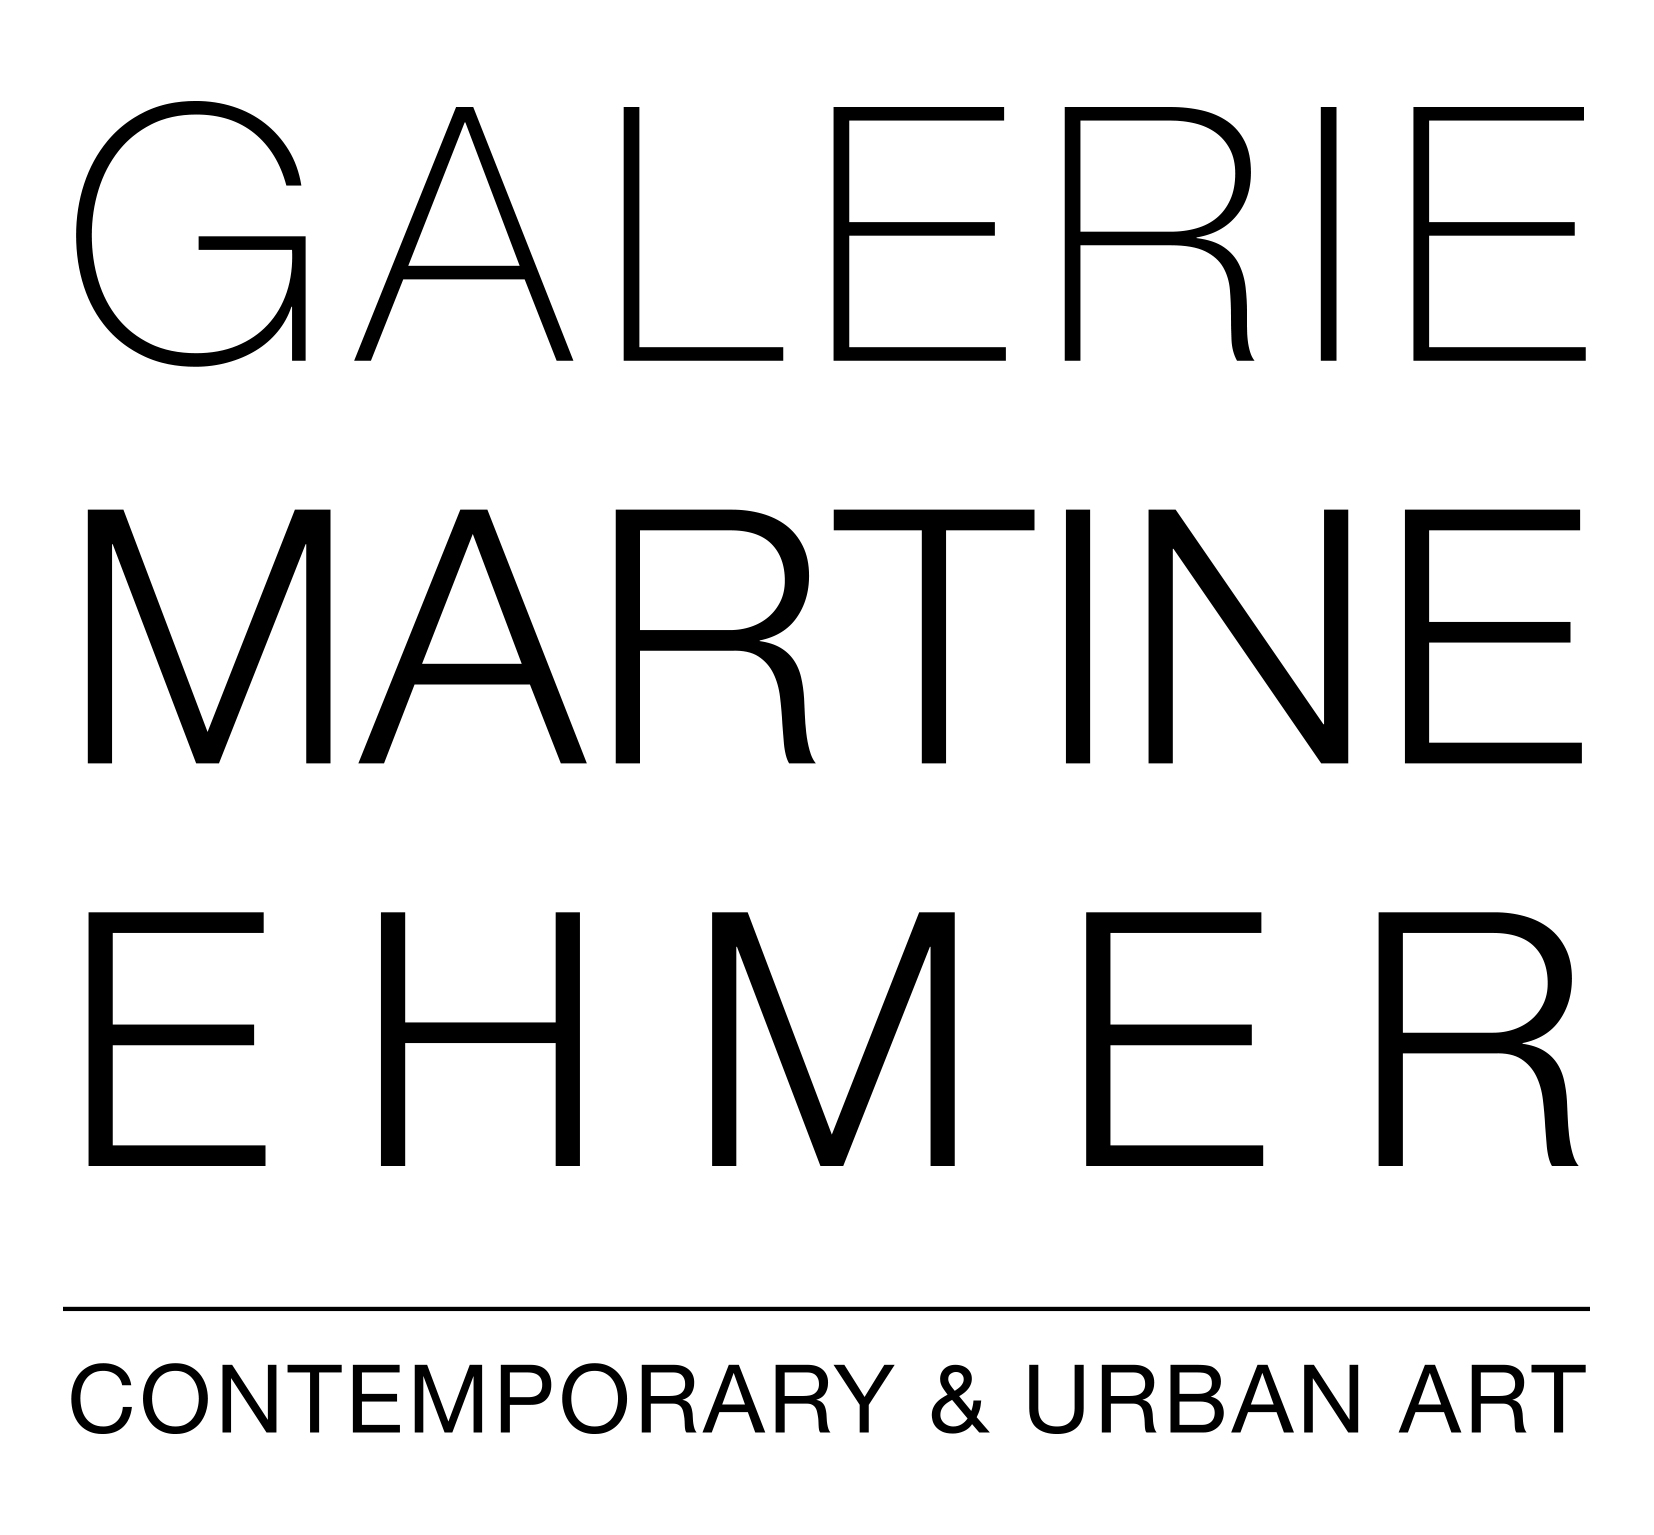 Galerie Martine Ehmer